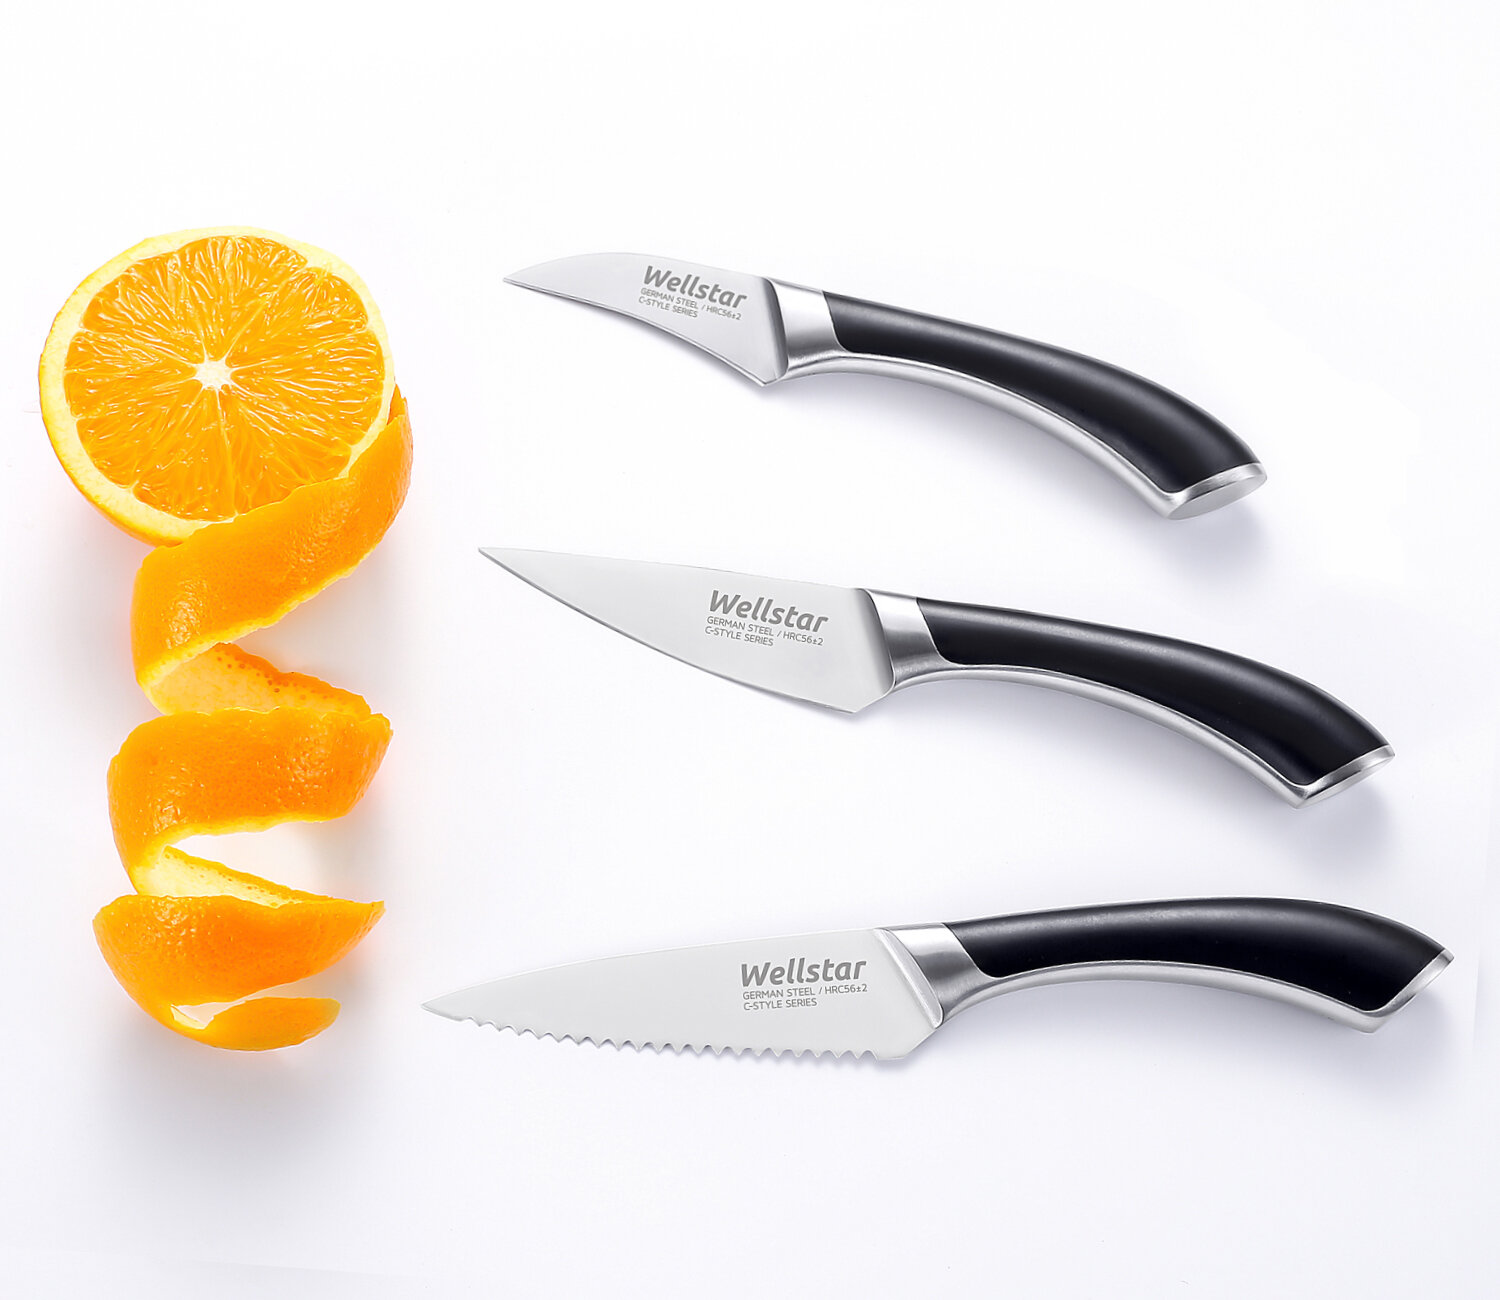 https://assets.wfcdn.com/im/19157612/compr-r85/1519/151964116/wellstar-c-style-series-3-piece-stainless-steel-assorted-knife-set.jpg